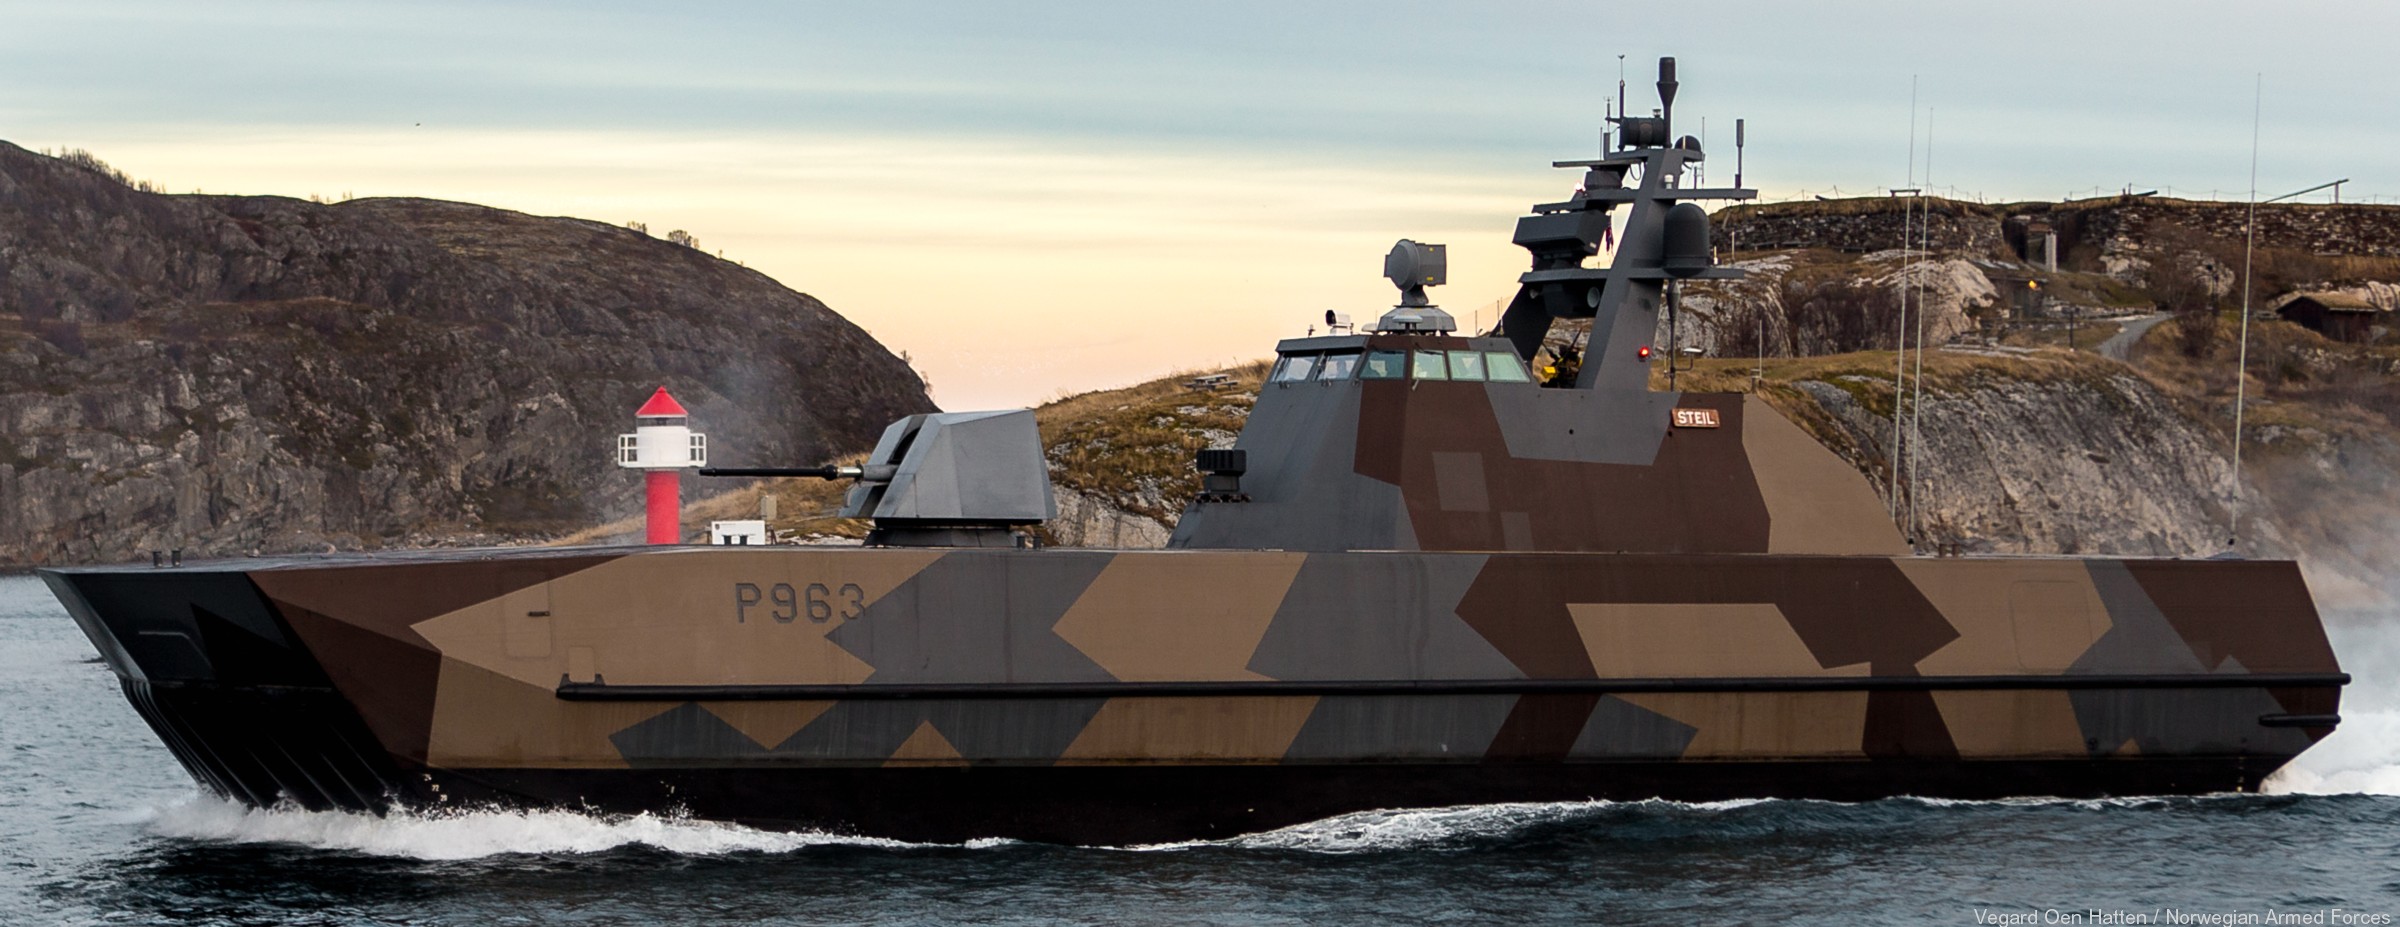 p-963 steil knm hnoms skjold class corvette royal norwegian navy sjoforsvaret 12